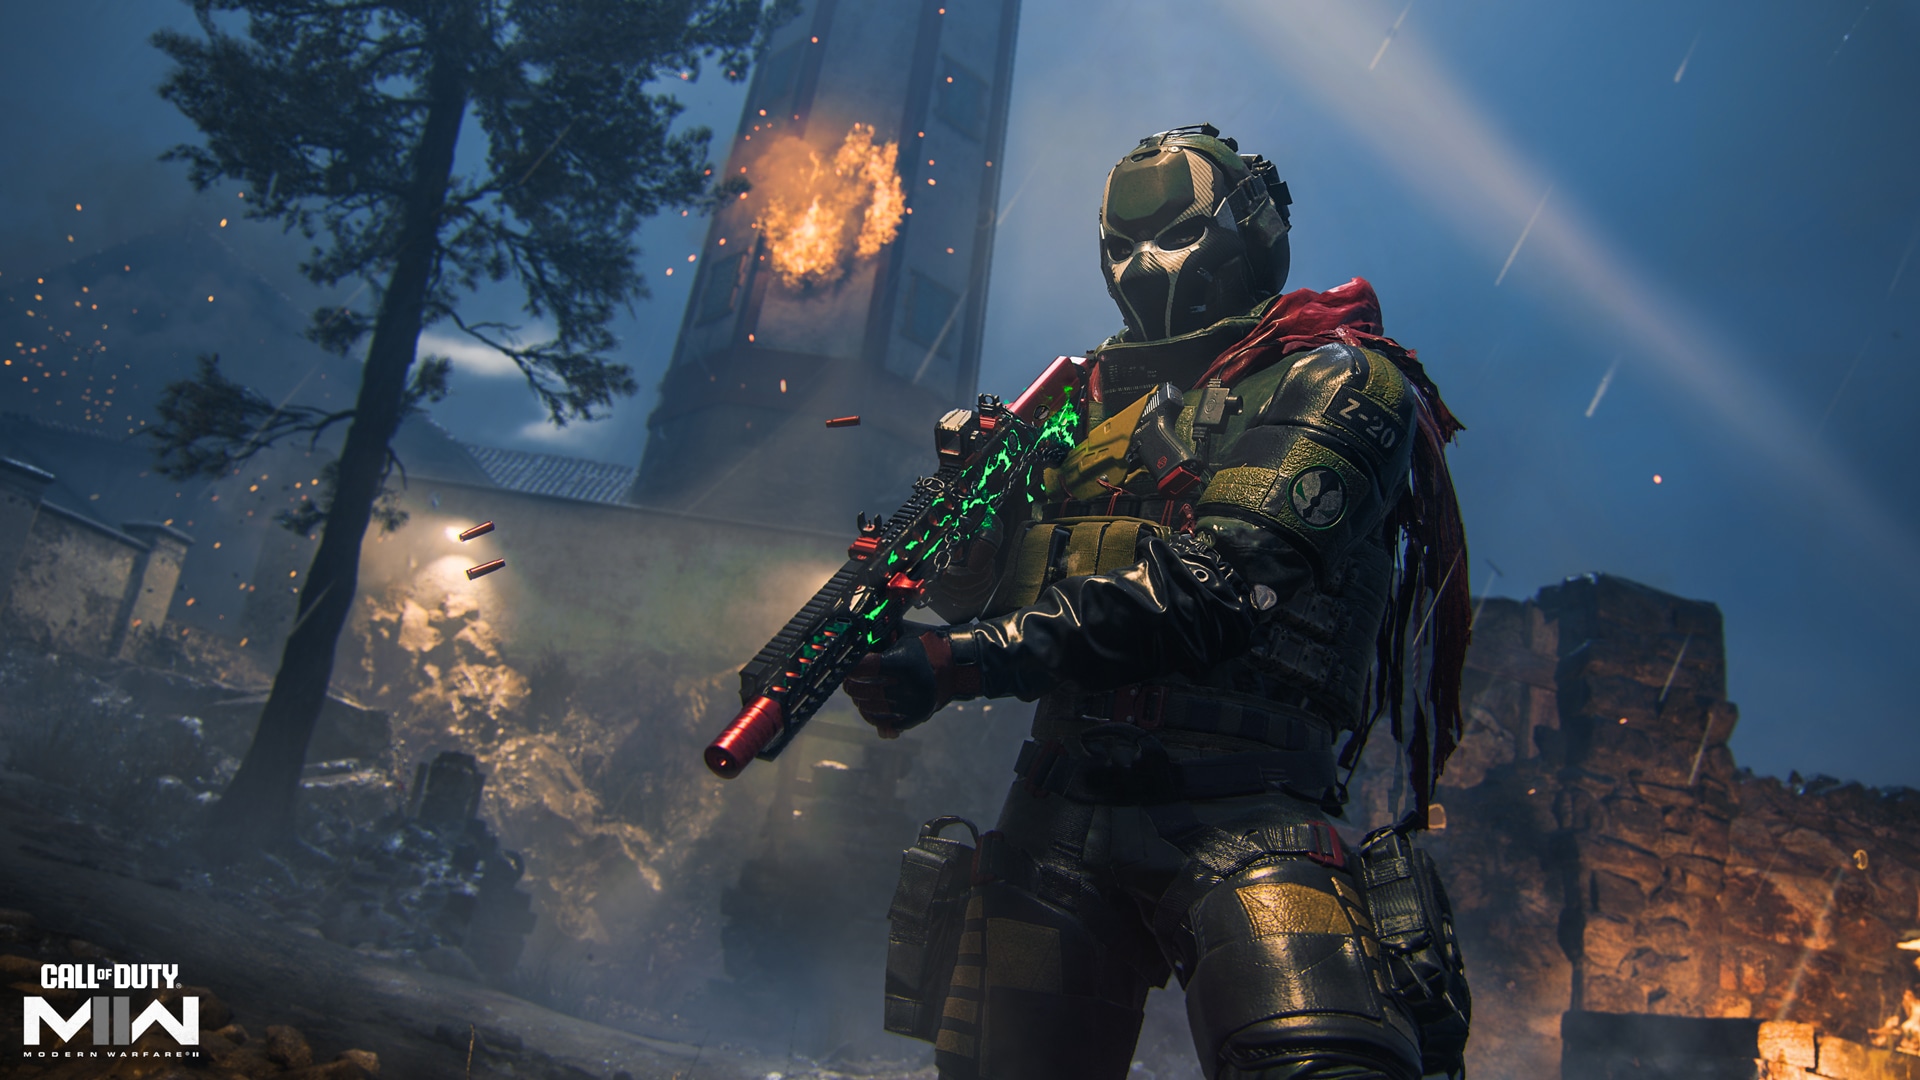 Call of Duty Advanced Warfare: como mudar o visual, com roupas e